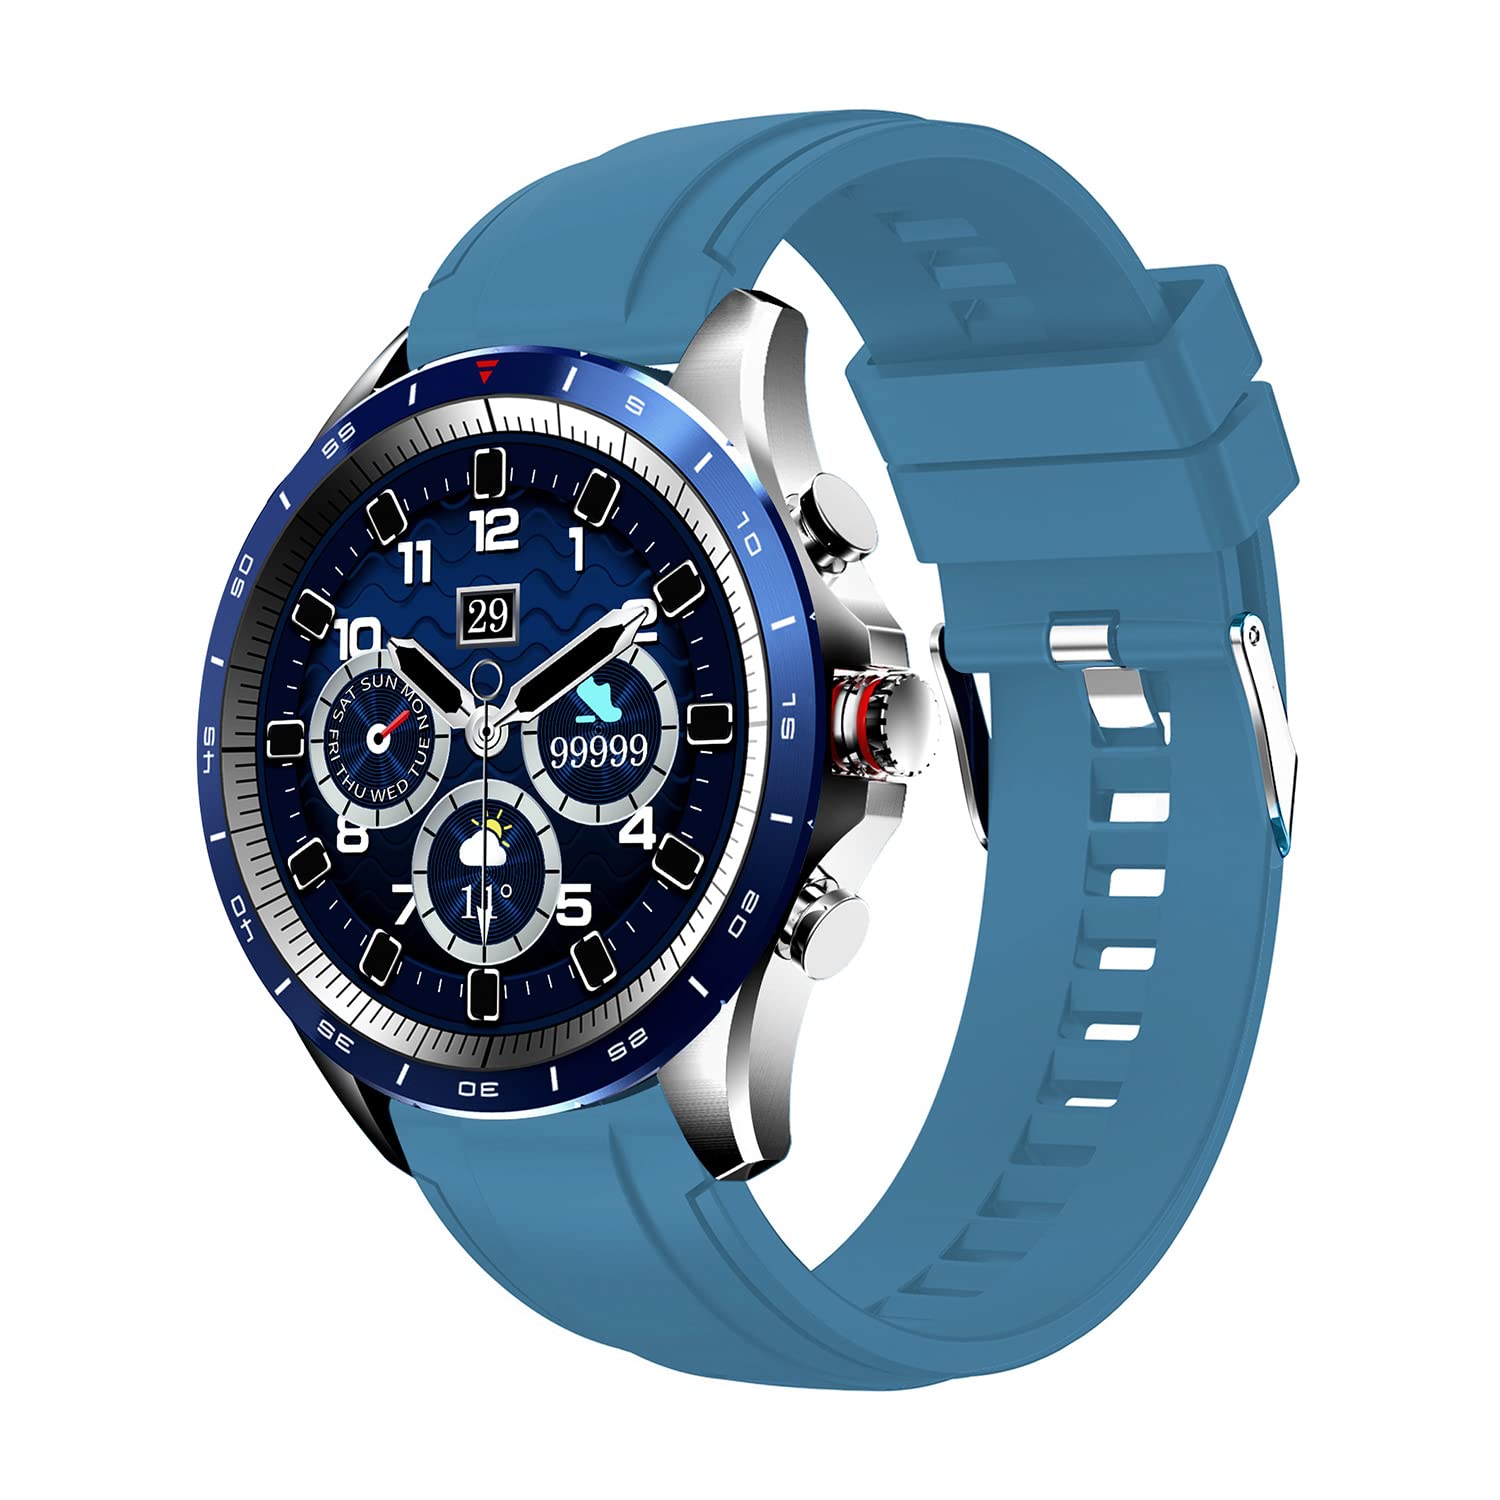 Atlanta 9718- Smartwatch, für Herren, Fitnesstracker, mit Wettervorhersage, Schrittzähler, zum Blutdruck messen, wasserdicht, Farbe:Blau